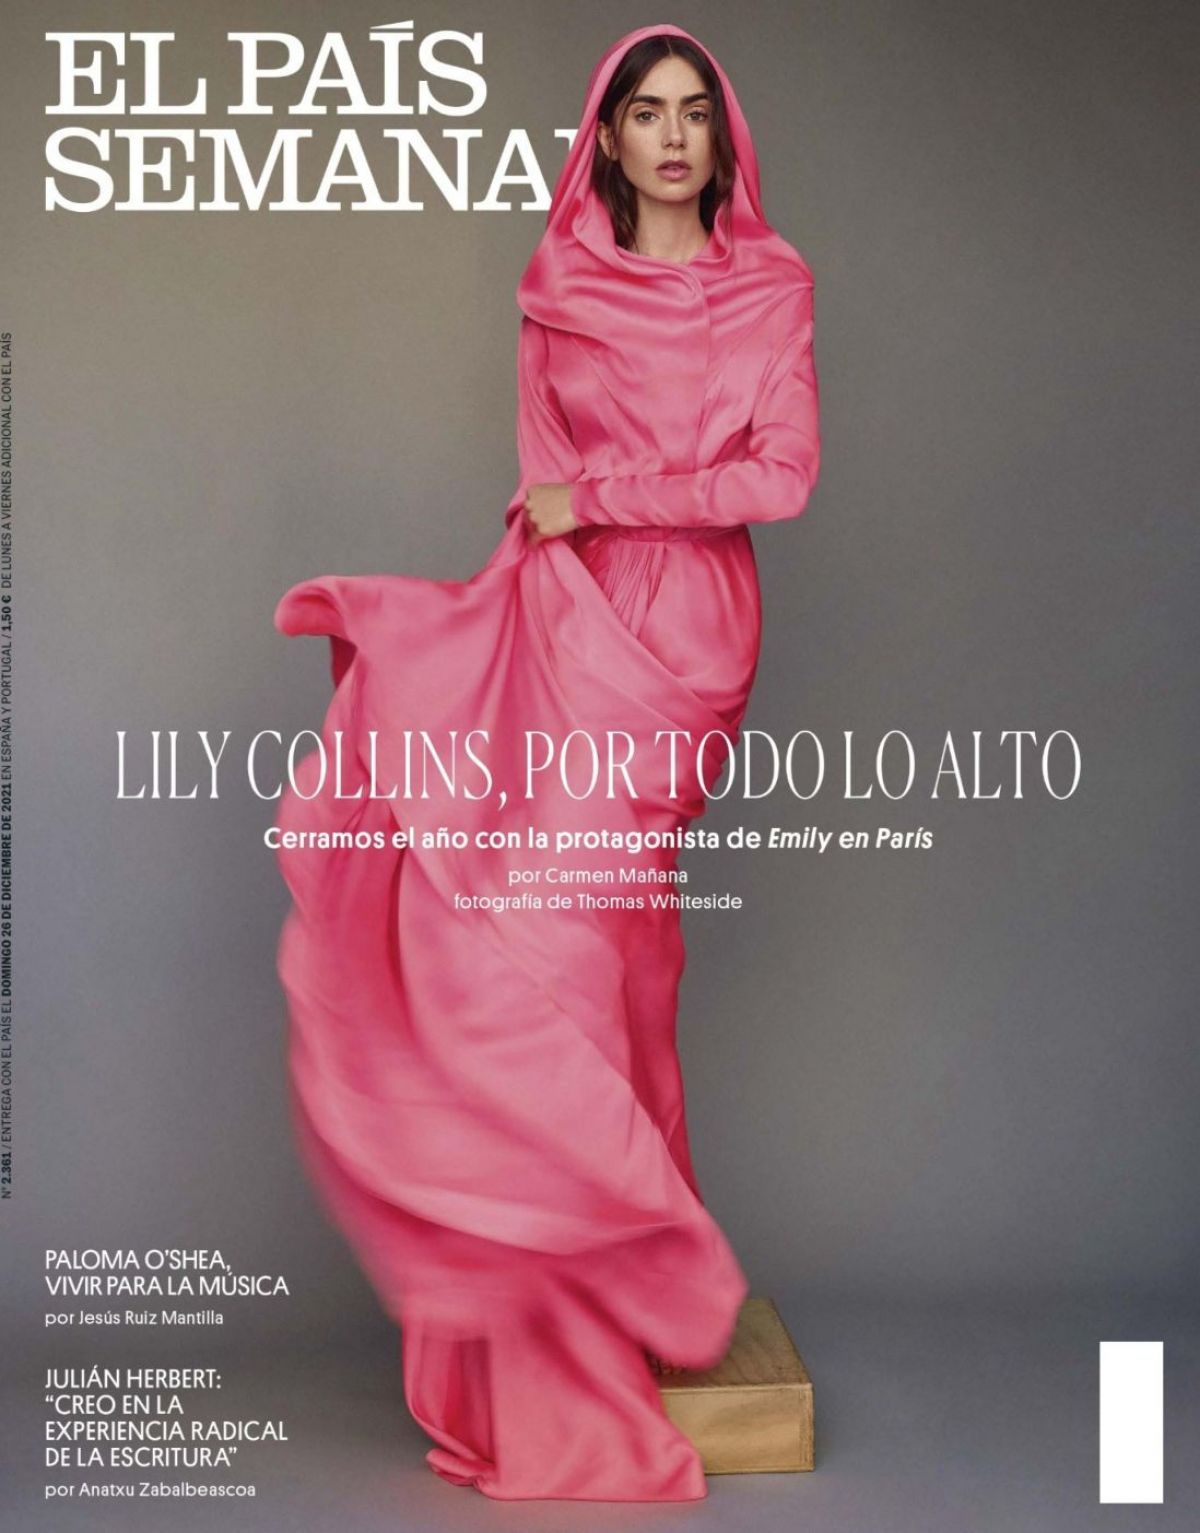 LILY COLLINS in El Pias Semanal 2021 – HawtCelebs